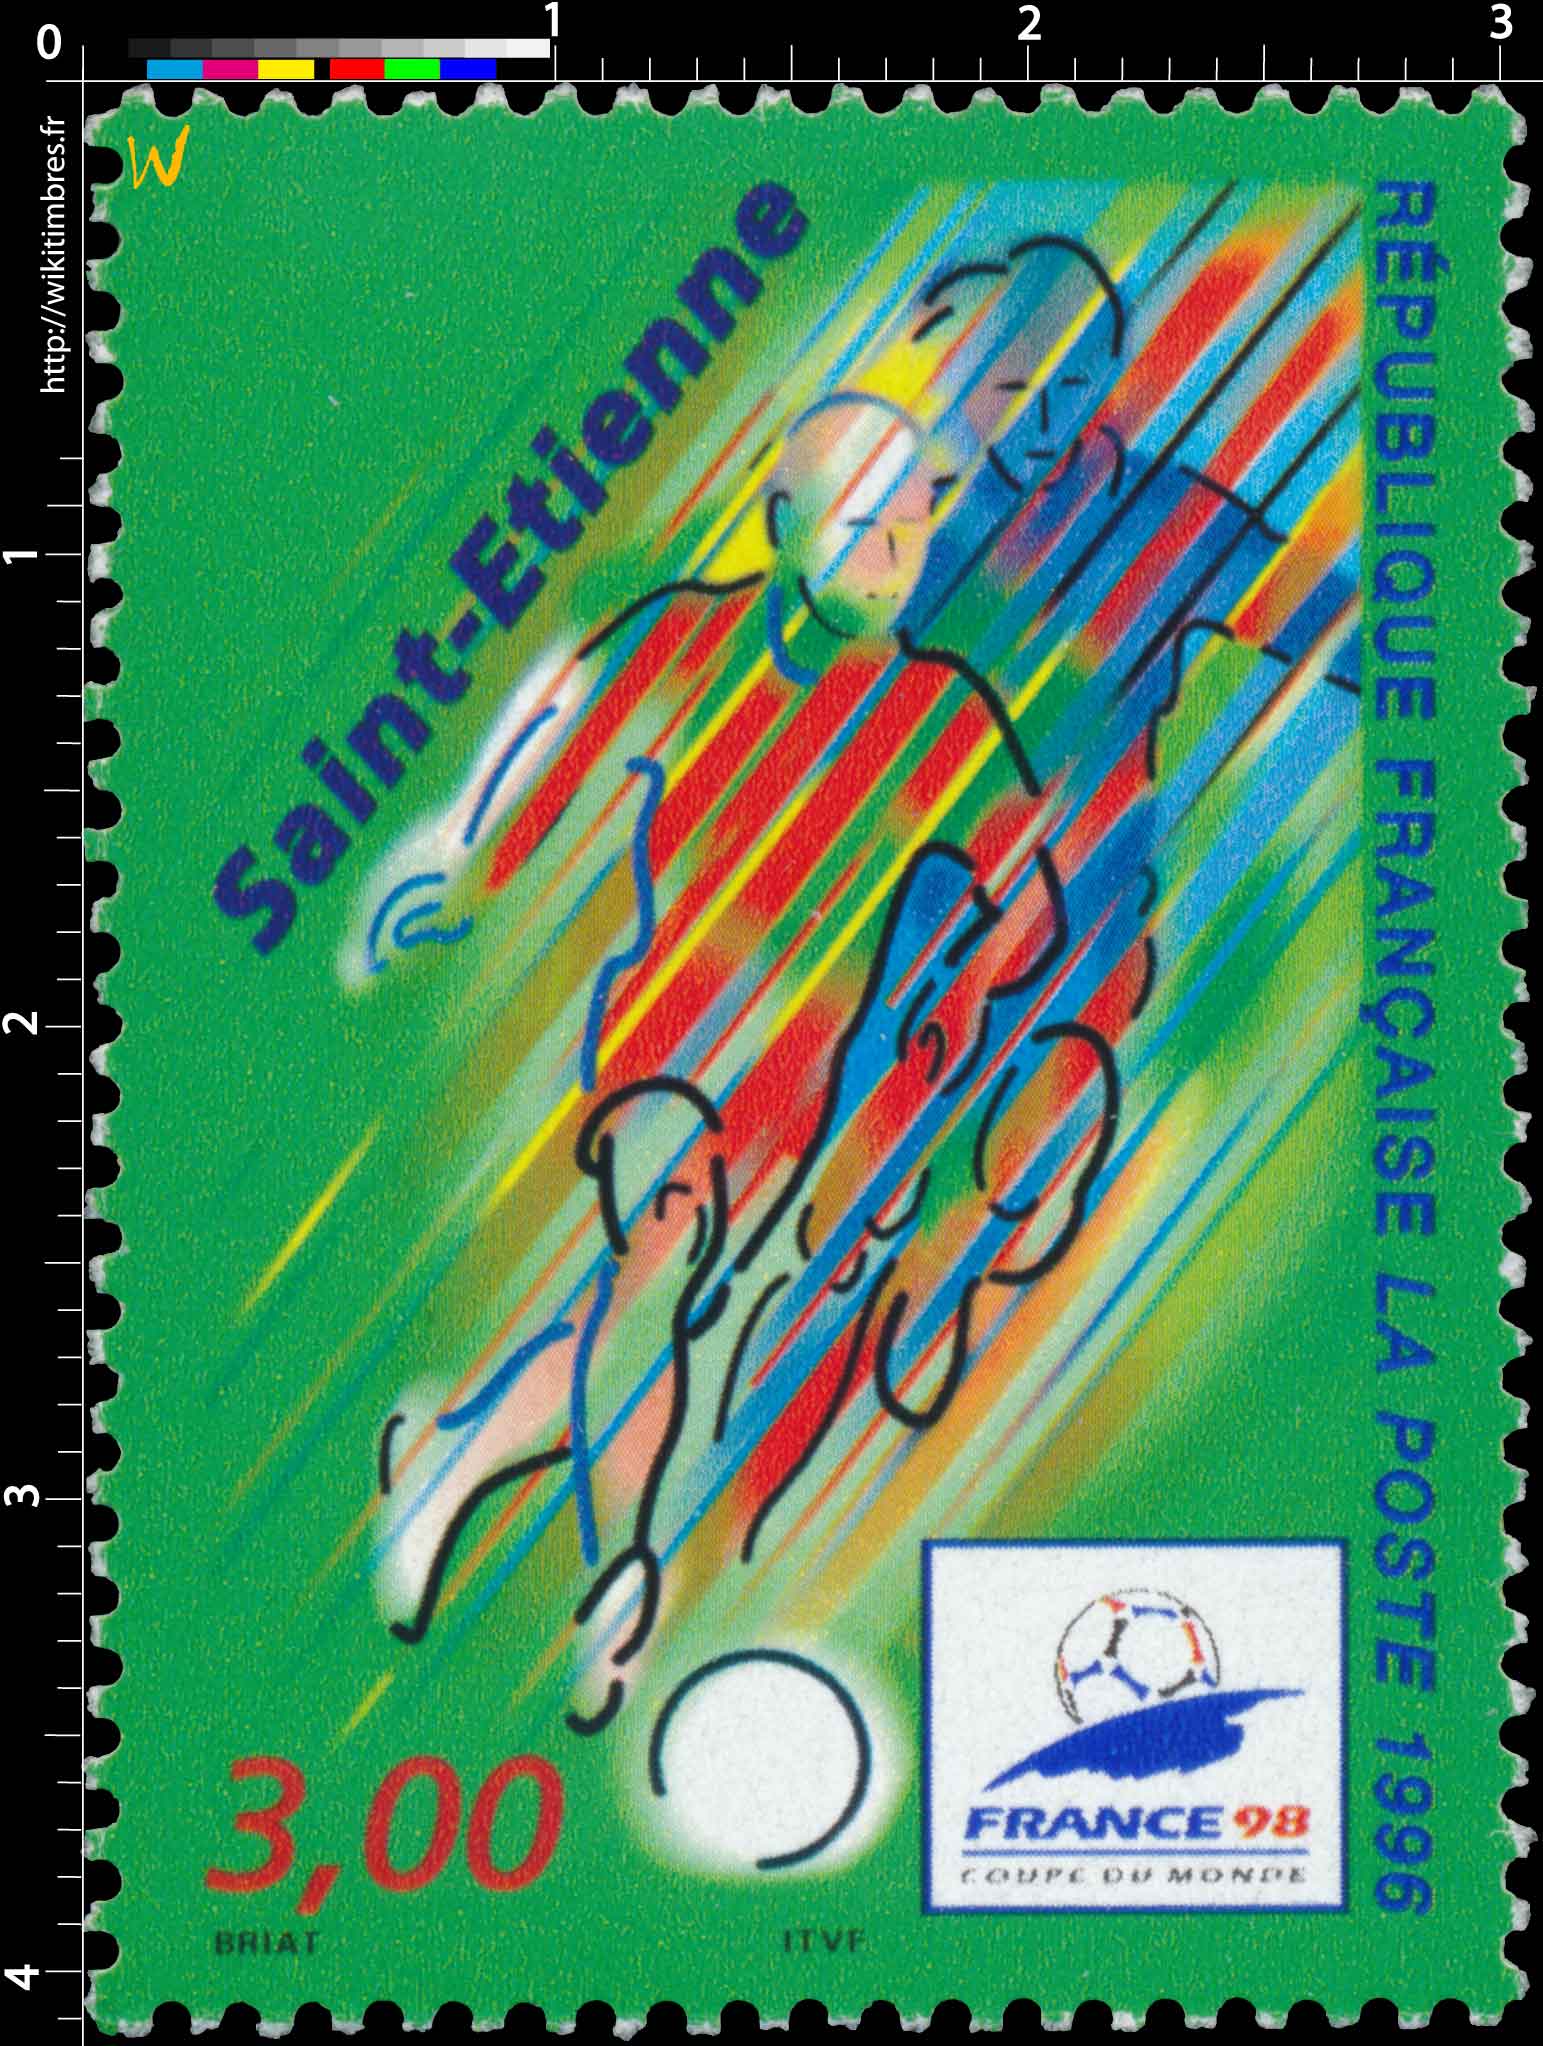 1996 FRANCE 98 Saint-Étienne